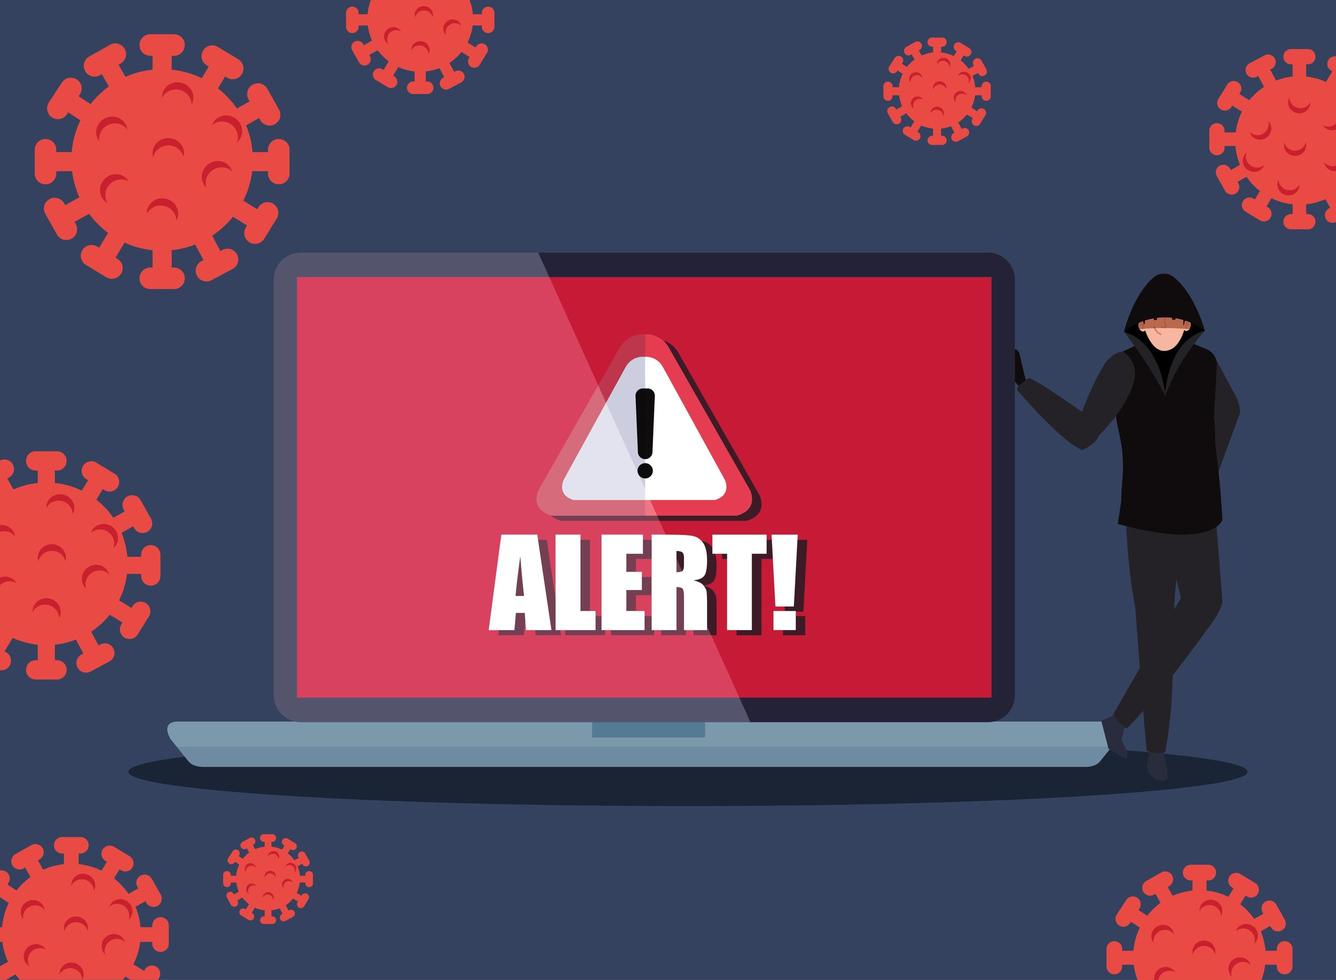 Hacker und Laptop mit Warnschild während der Covid 19-Pandemie vektor